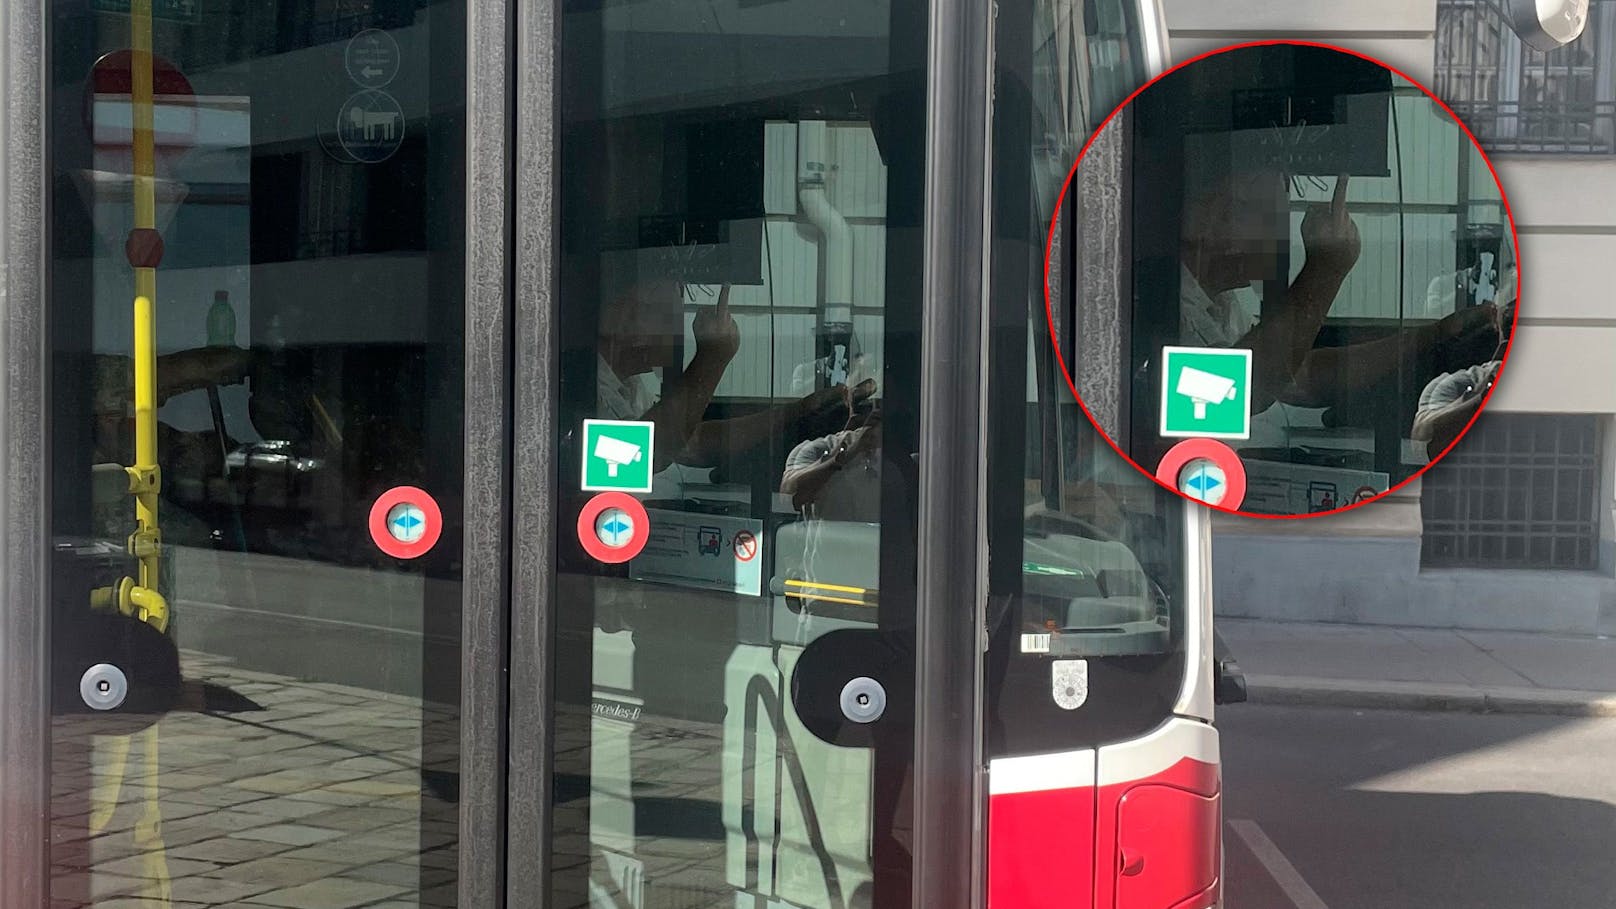 Öffi-Streit – Busfahrer zeigt Wiener den Mittelfinger